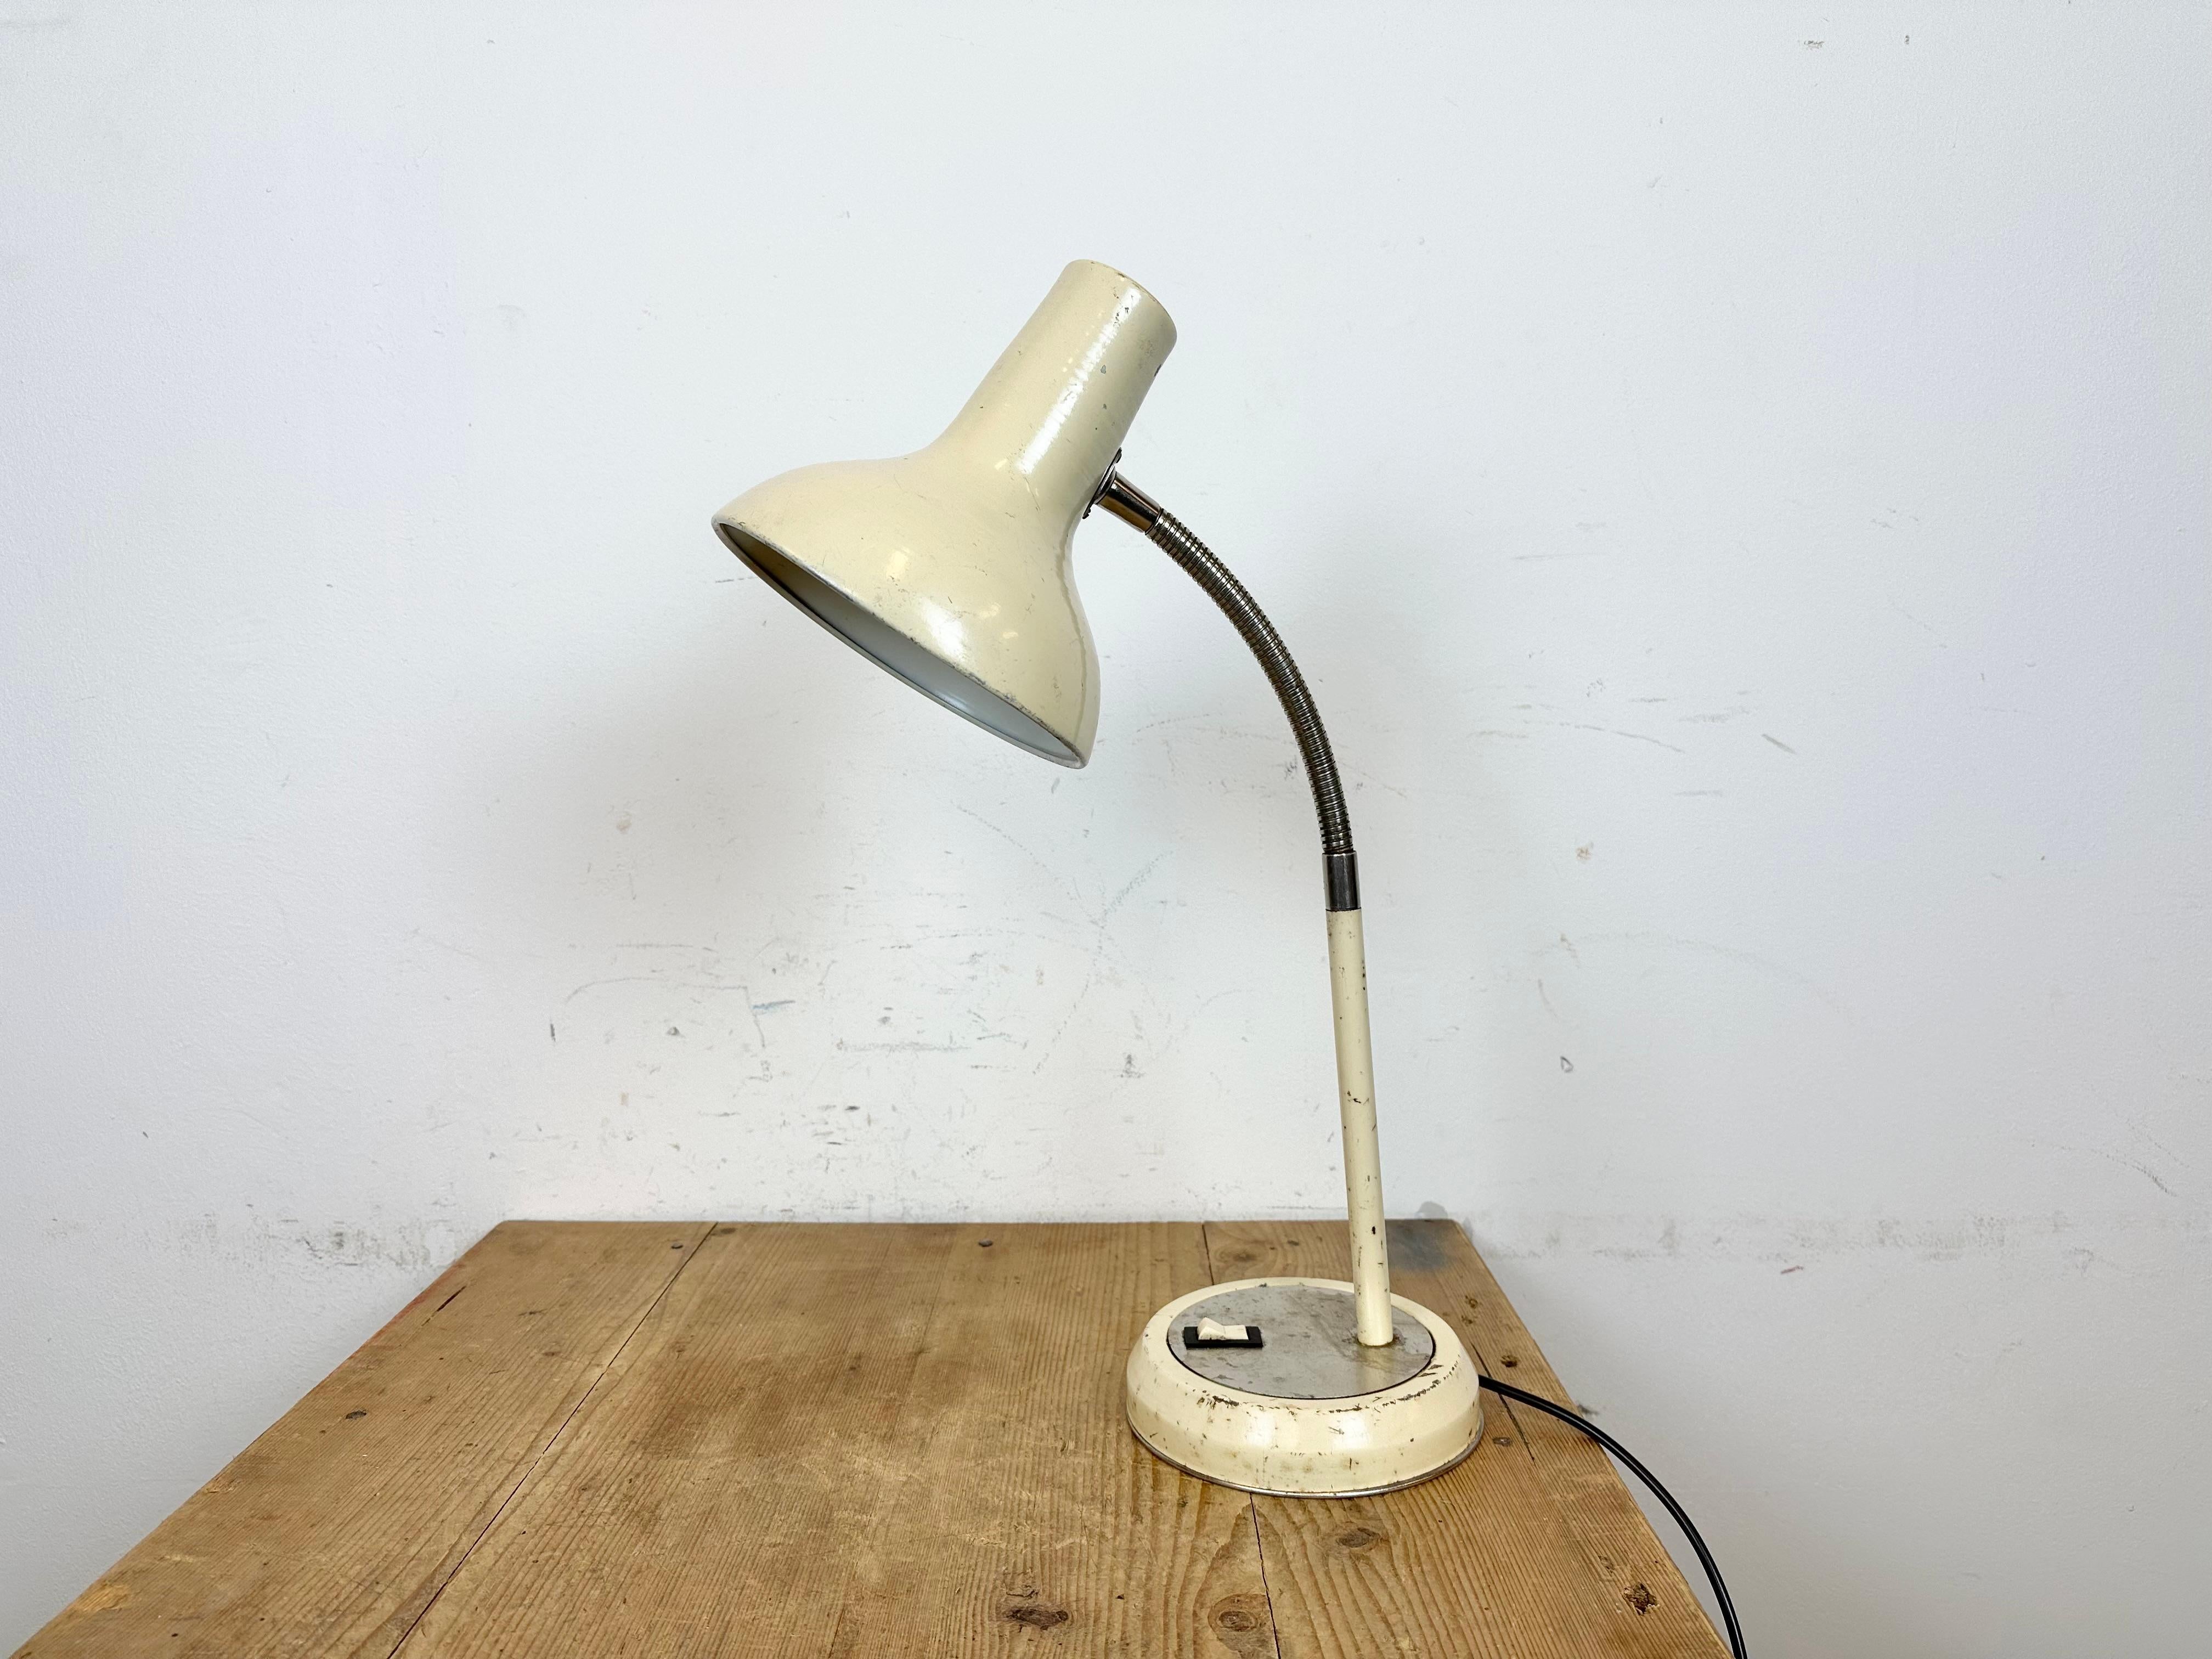 Industrielle verstellbare Werkstatt-Tischlampe, hergestellt von Polam Wilkasy in Polen in den 1960er Jahren. Sie hat einen Aluminiumschirm, einen Metallsockel mit Originalschalter und einen verchromten Schwanenhals. Für die Originalfassung werden